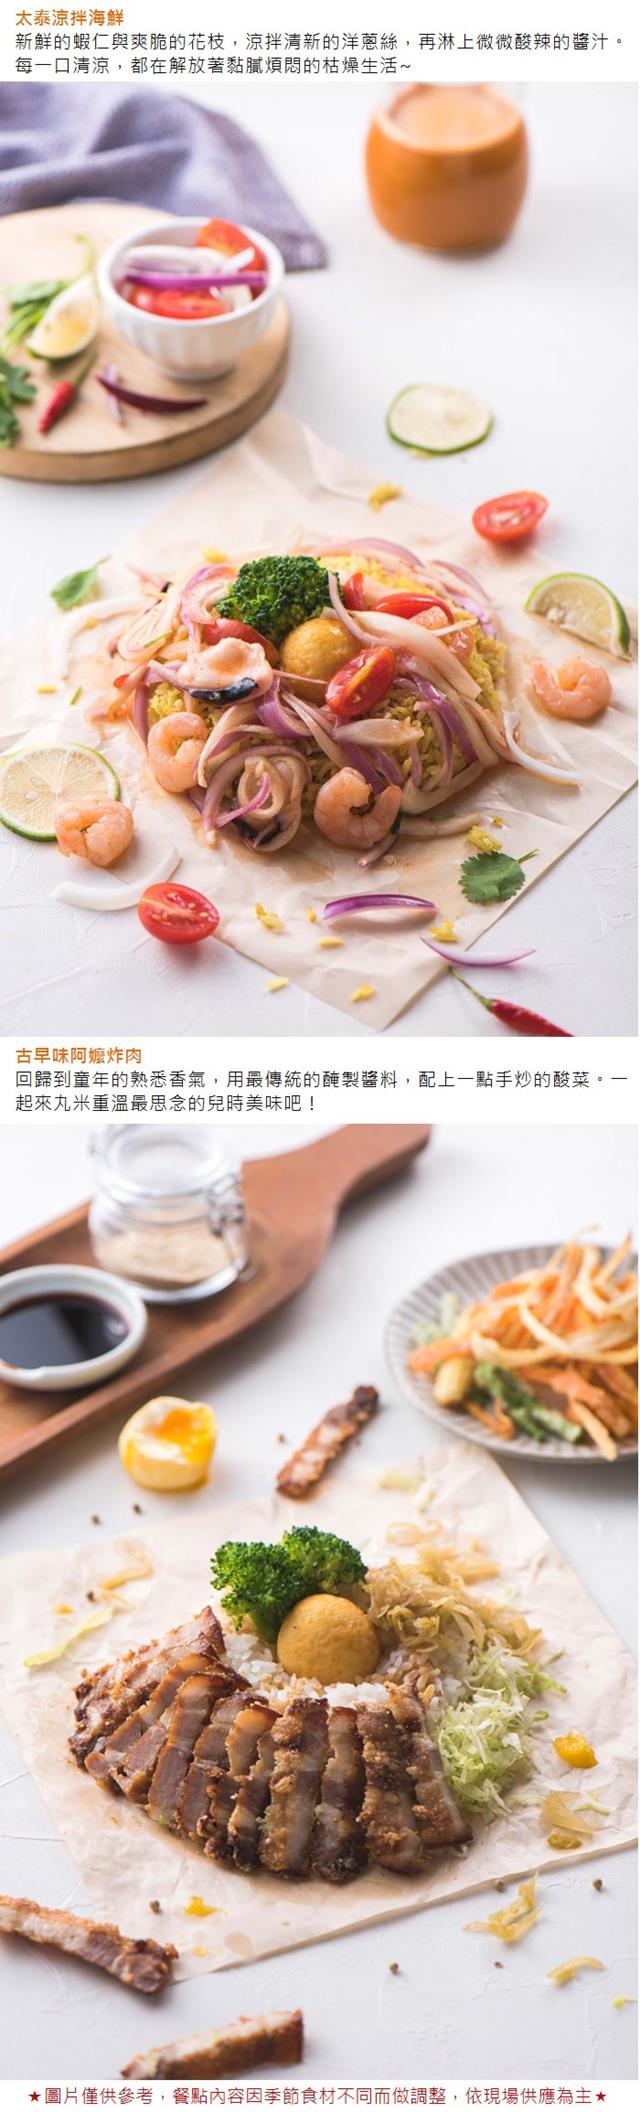 (台北)丸米RIZO創意米食料理大安店滿足套餐外帶券(2張)